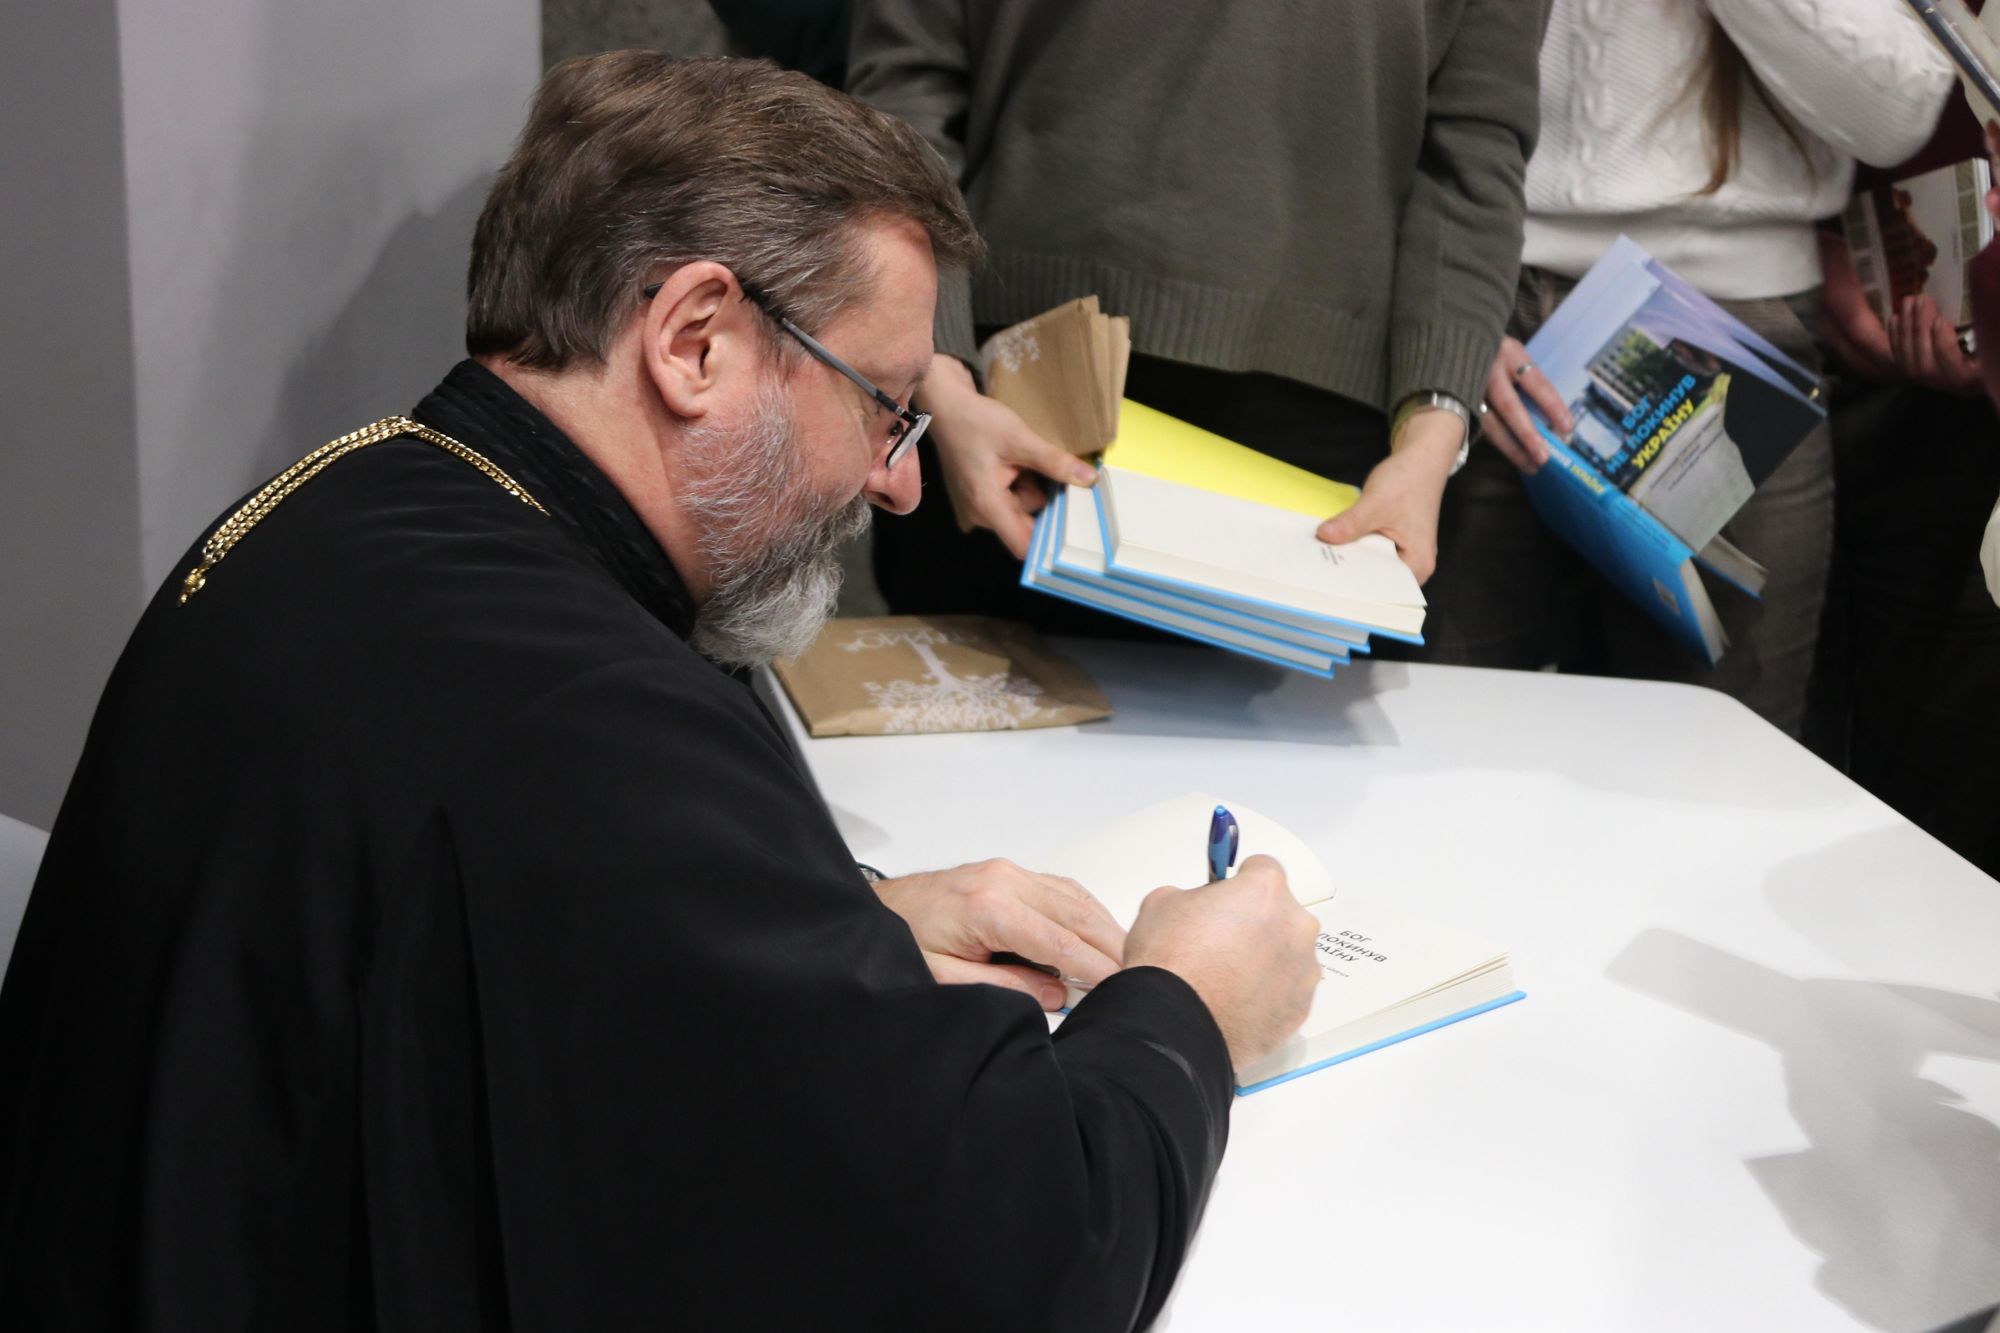 «Бог не покинув Україну» — в УКУ презентували книжку-розмову Блаженнішого Святослава з польським журналістом